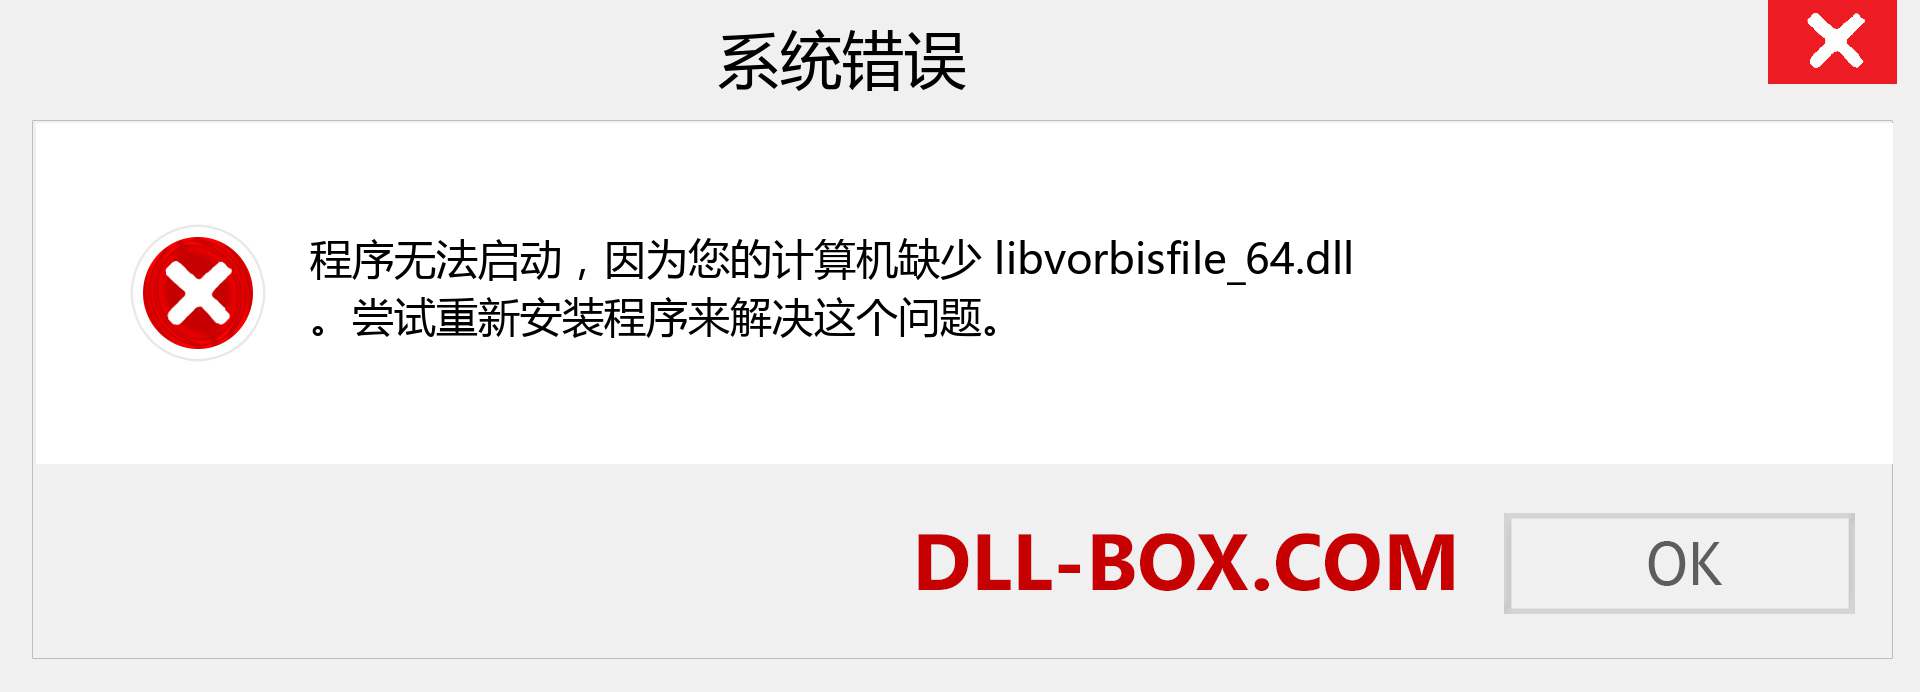 libvorbisfile_64.dll 文件丢失？。 适用于 Windows 7、8、10 的下载 - 修复 Windows、照片、图像上的 libvorbisfile_64 dll 丢失错误